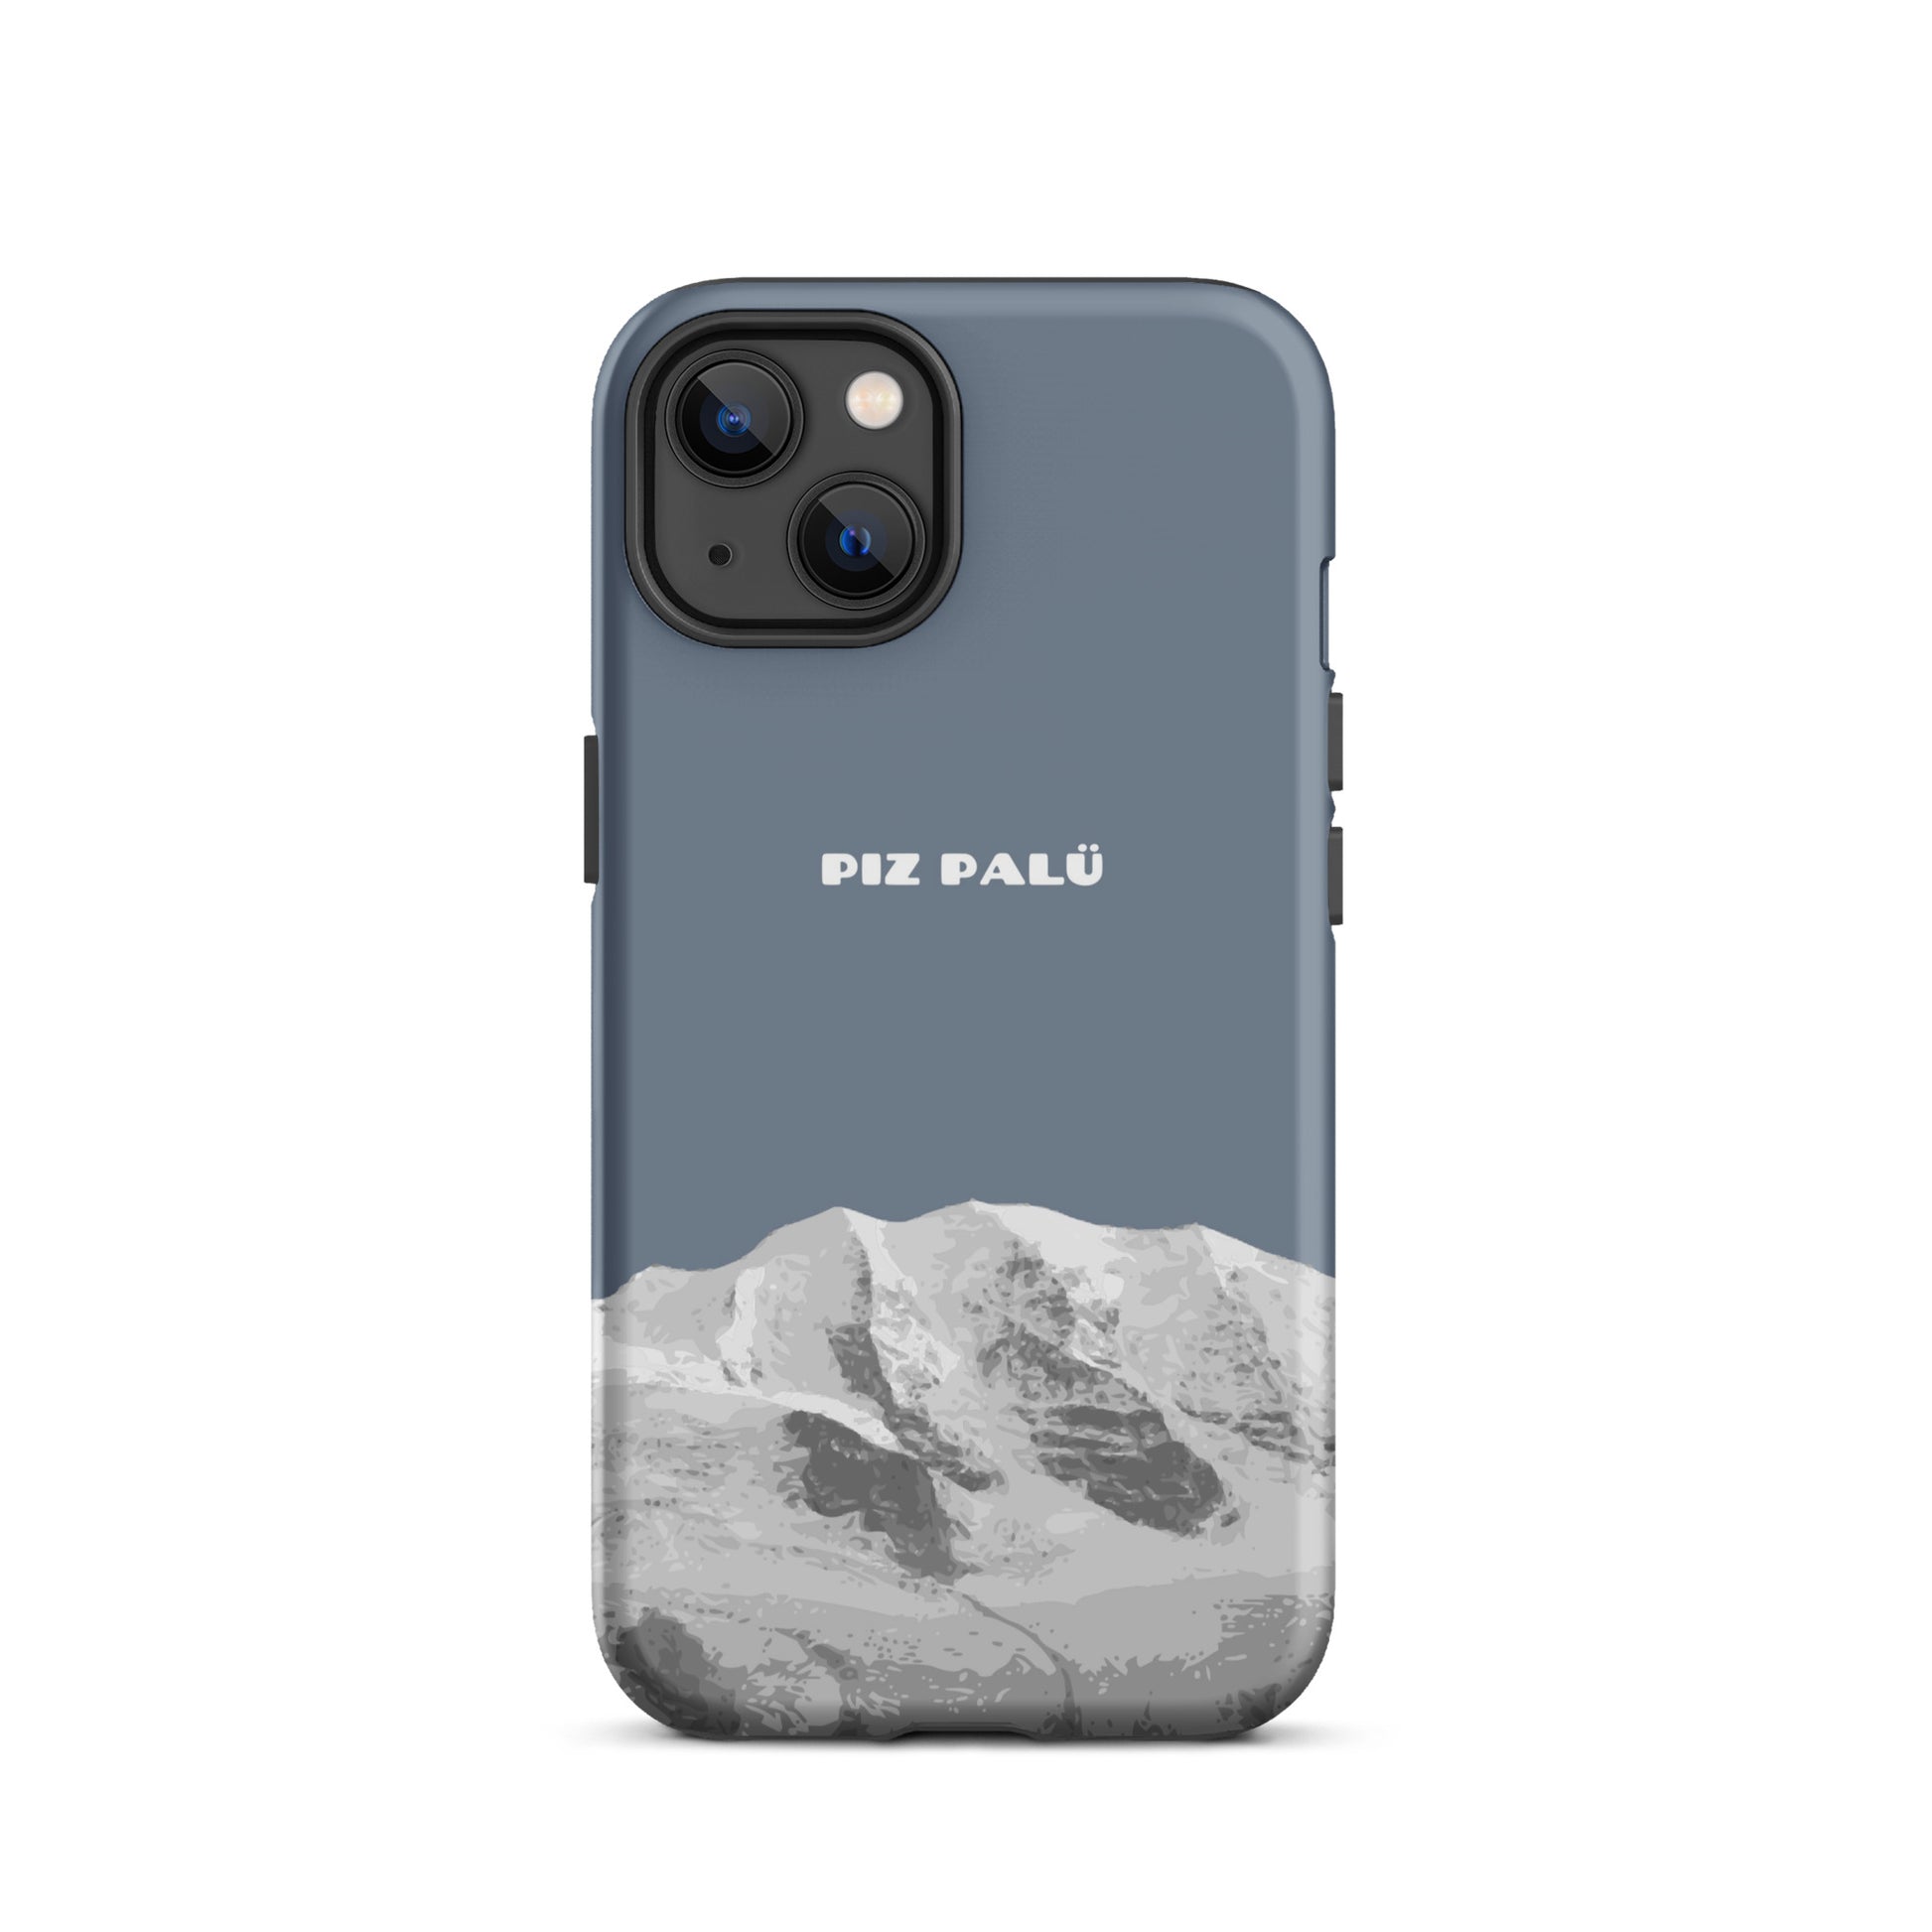 Hülle für das iPhone 13 von Apple in der Farbe Schiefergrau, dass den Piz Palü in Graubünden zeigt.